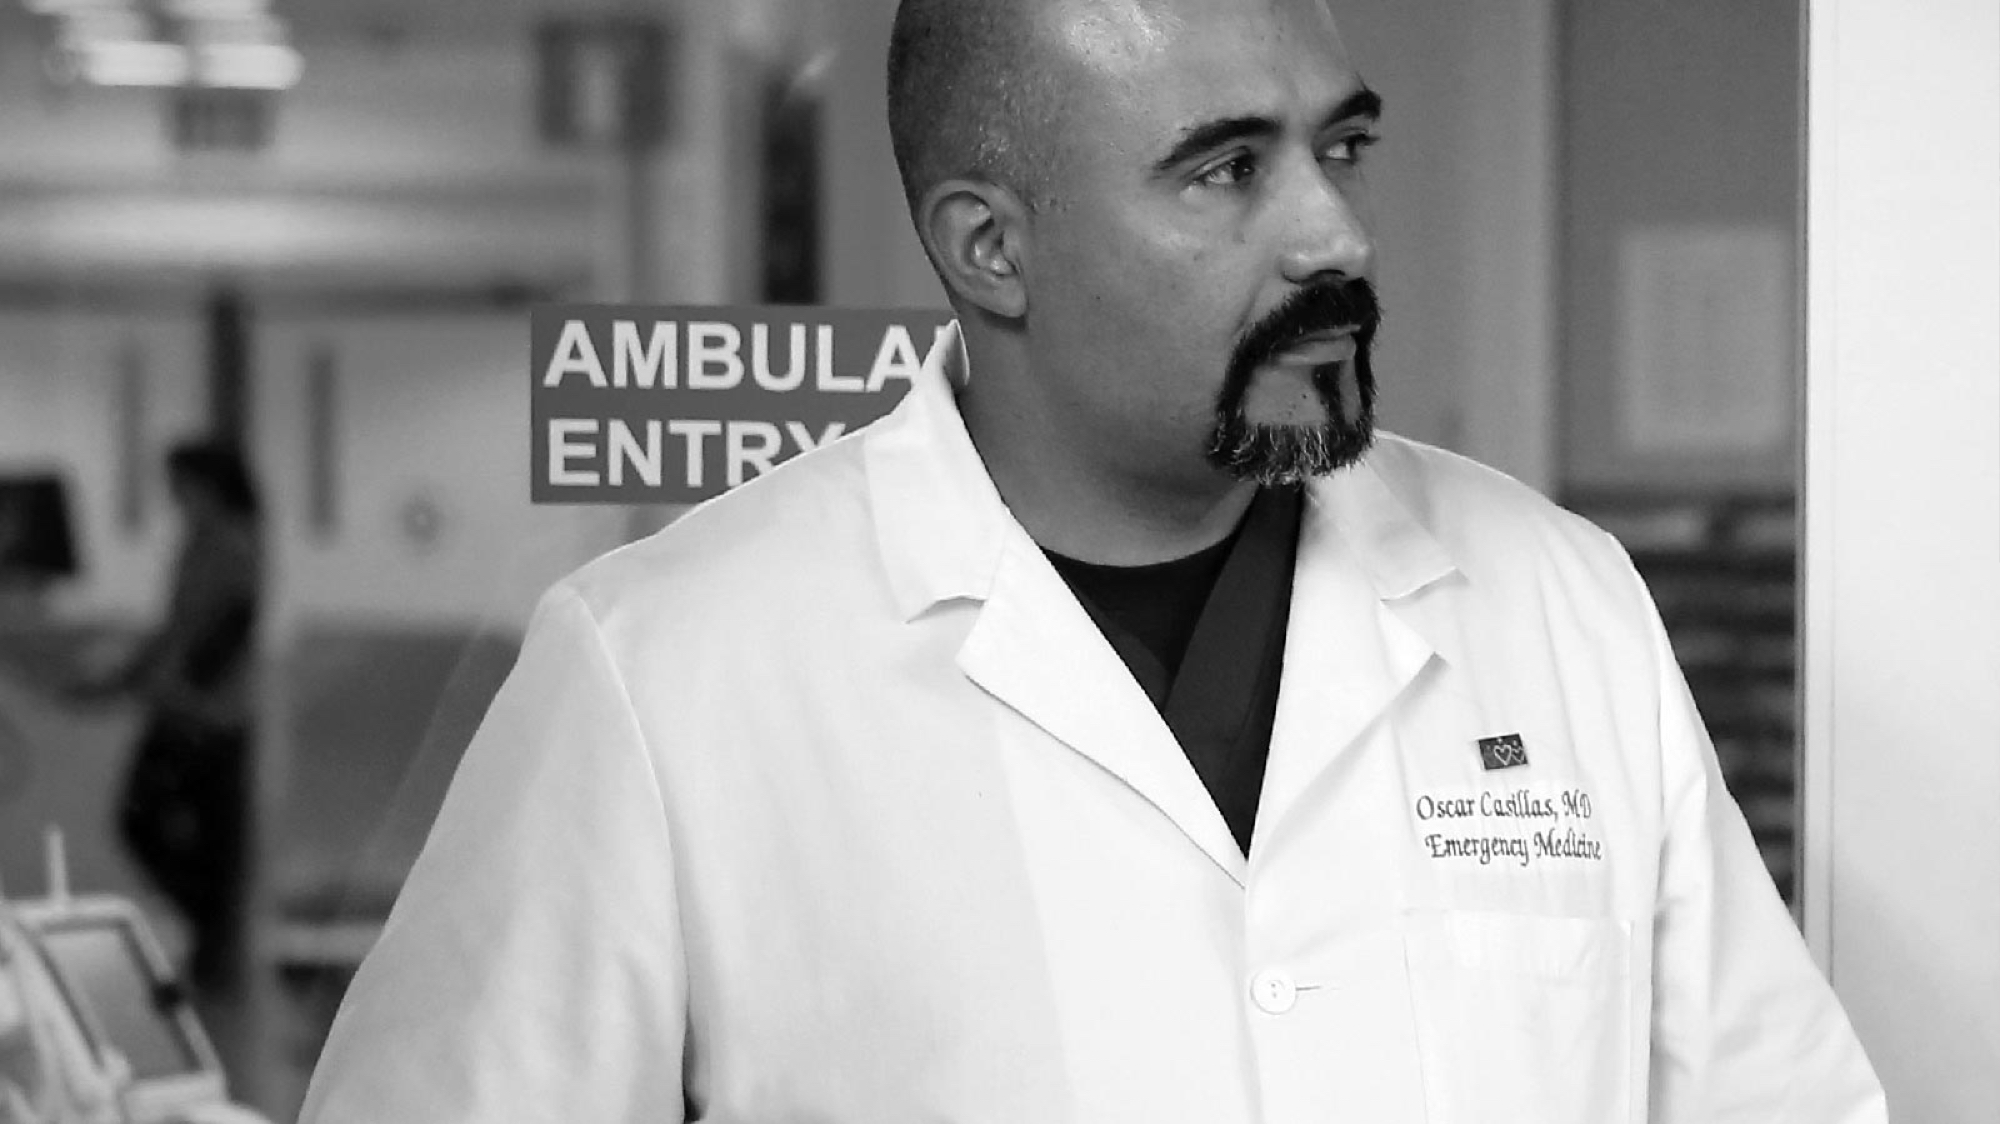 Retrato en blanco y negro del Dr. Oscar Casillas, un médico latino de mediana edad